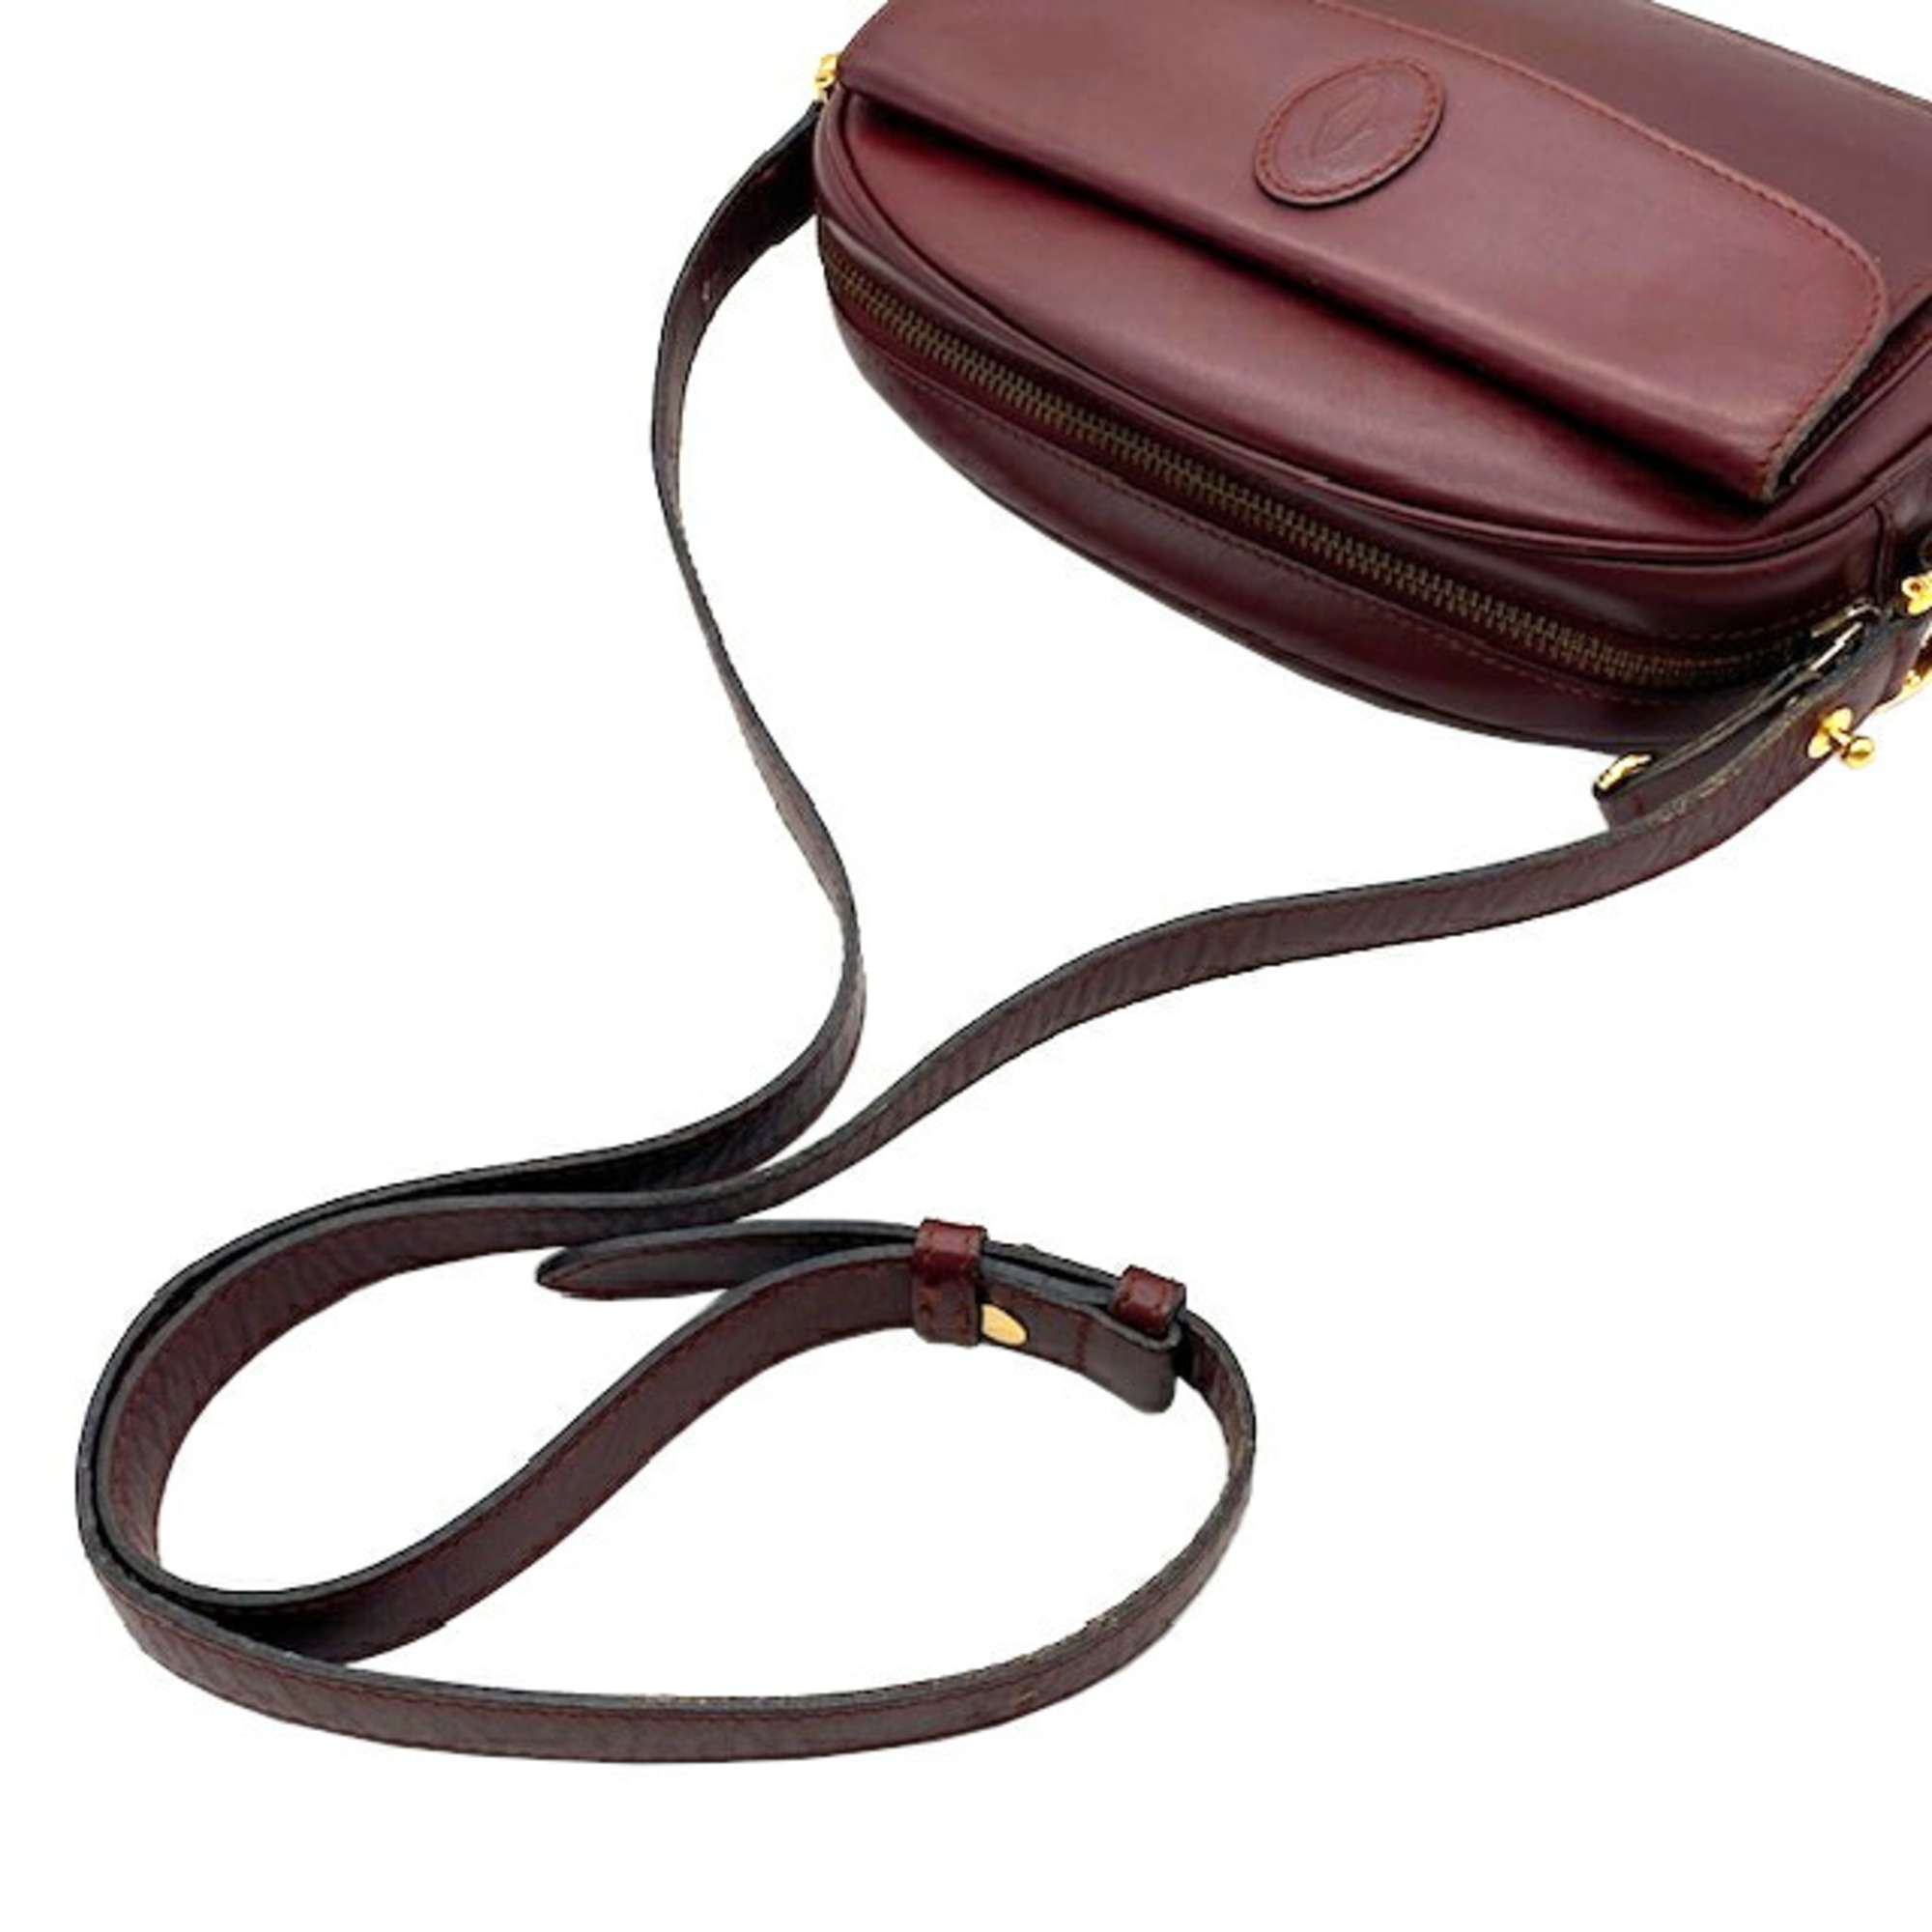 Cartier Must Line Shoulder Bag Leather Bordeaux